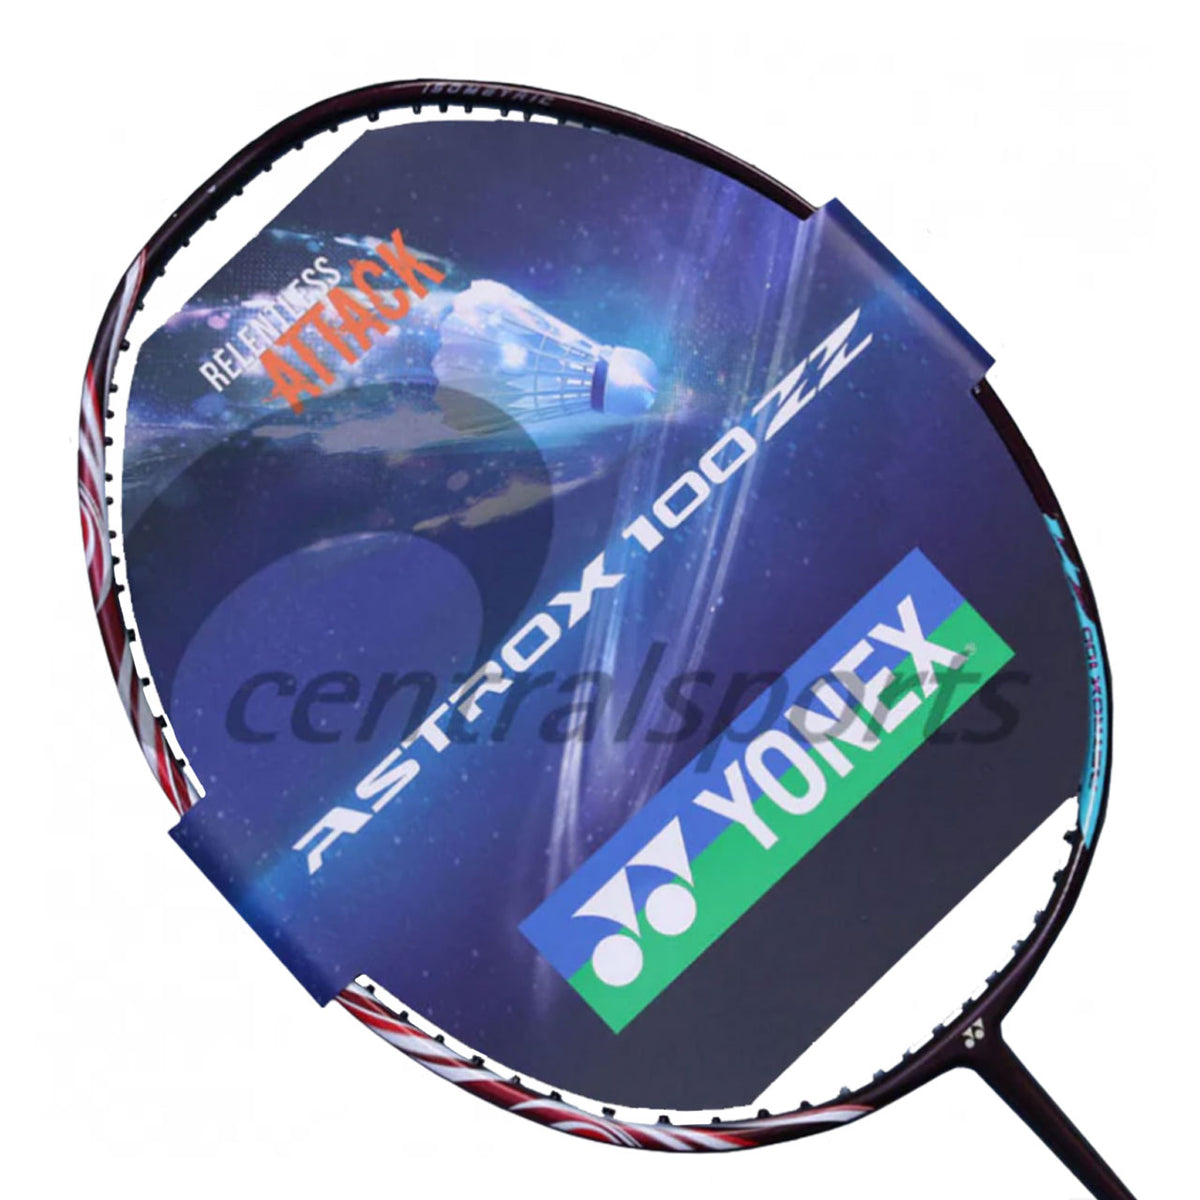 演示球拍 - Yonex Astrox 100ZZ 深海军蓝